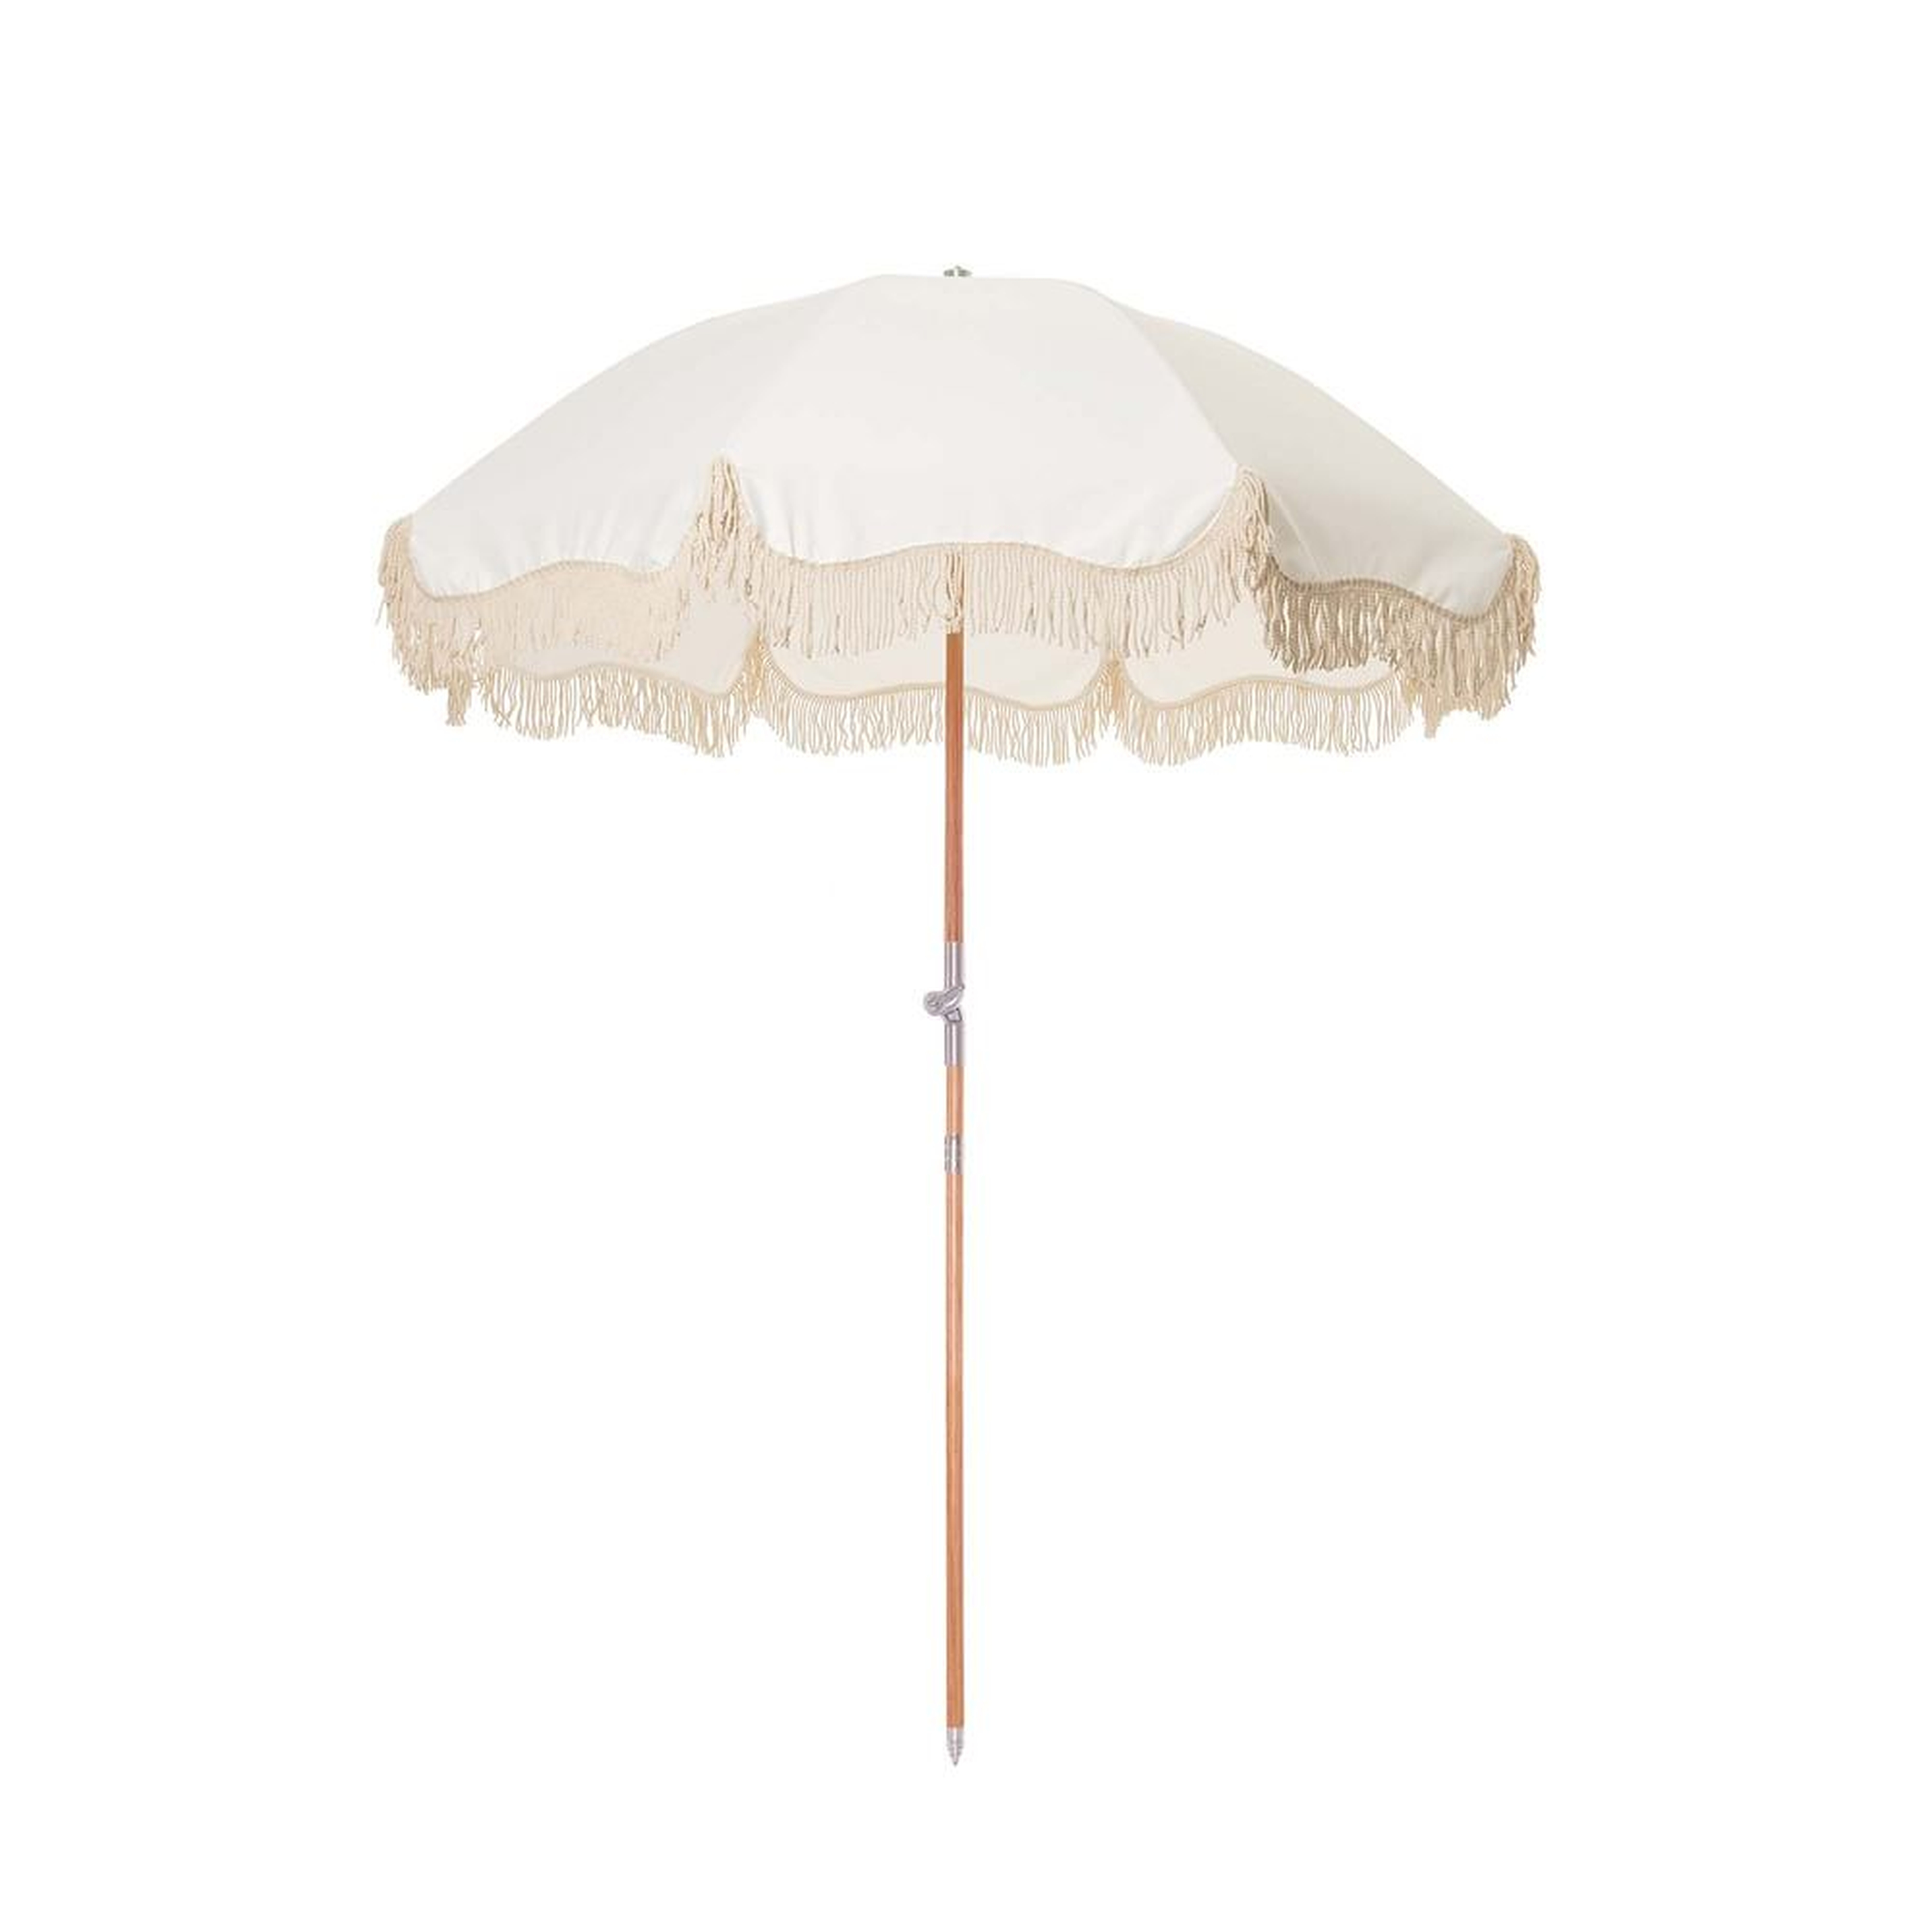 Business And Pleasure The Premium Umbrella Antique White - West Elm